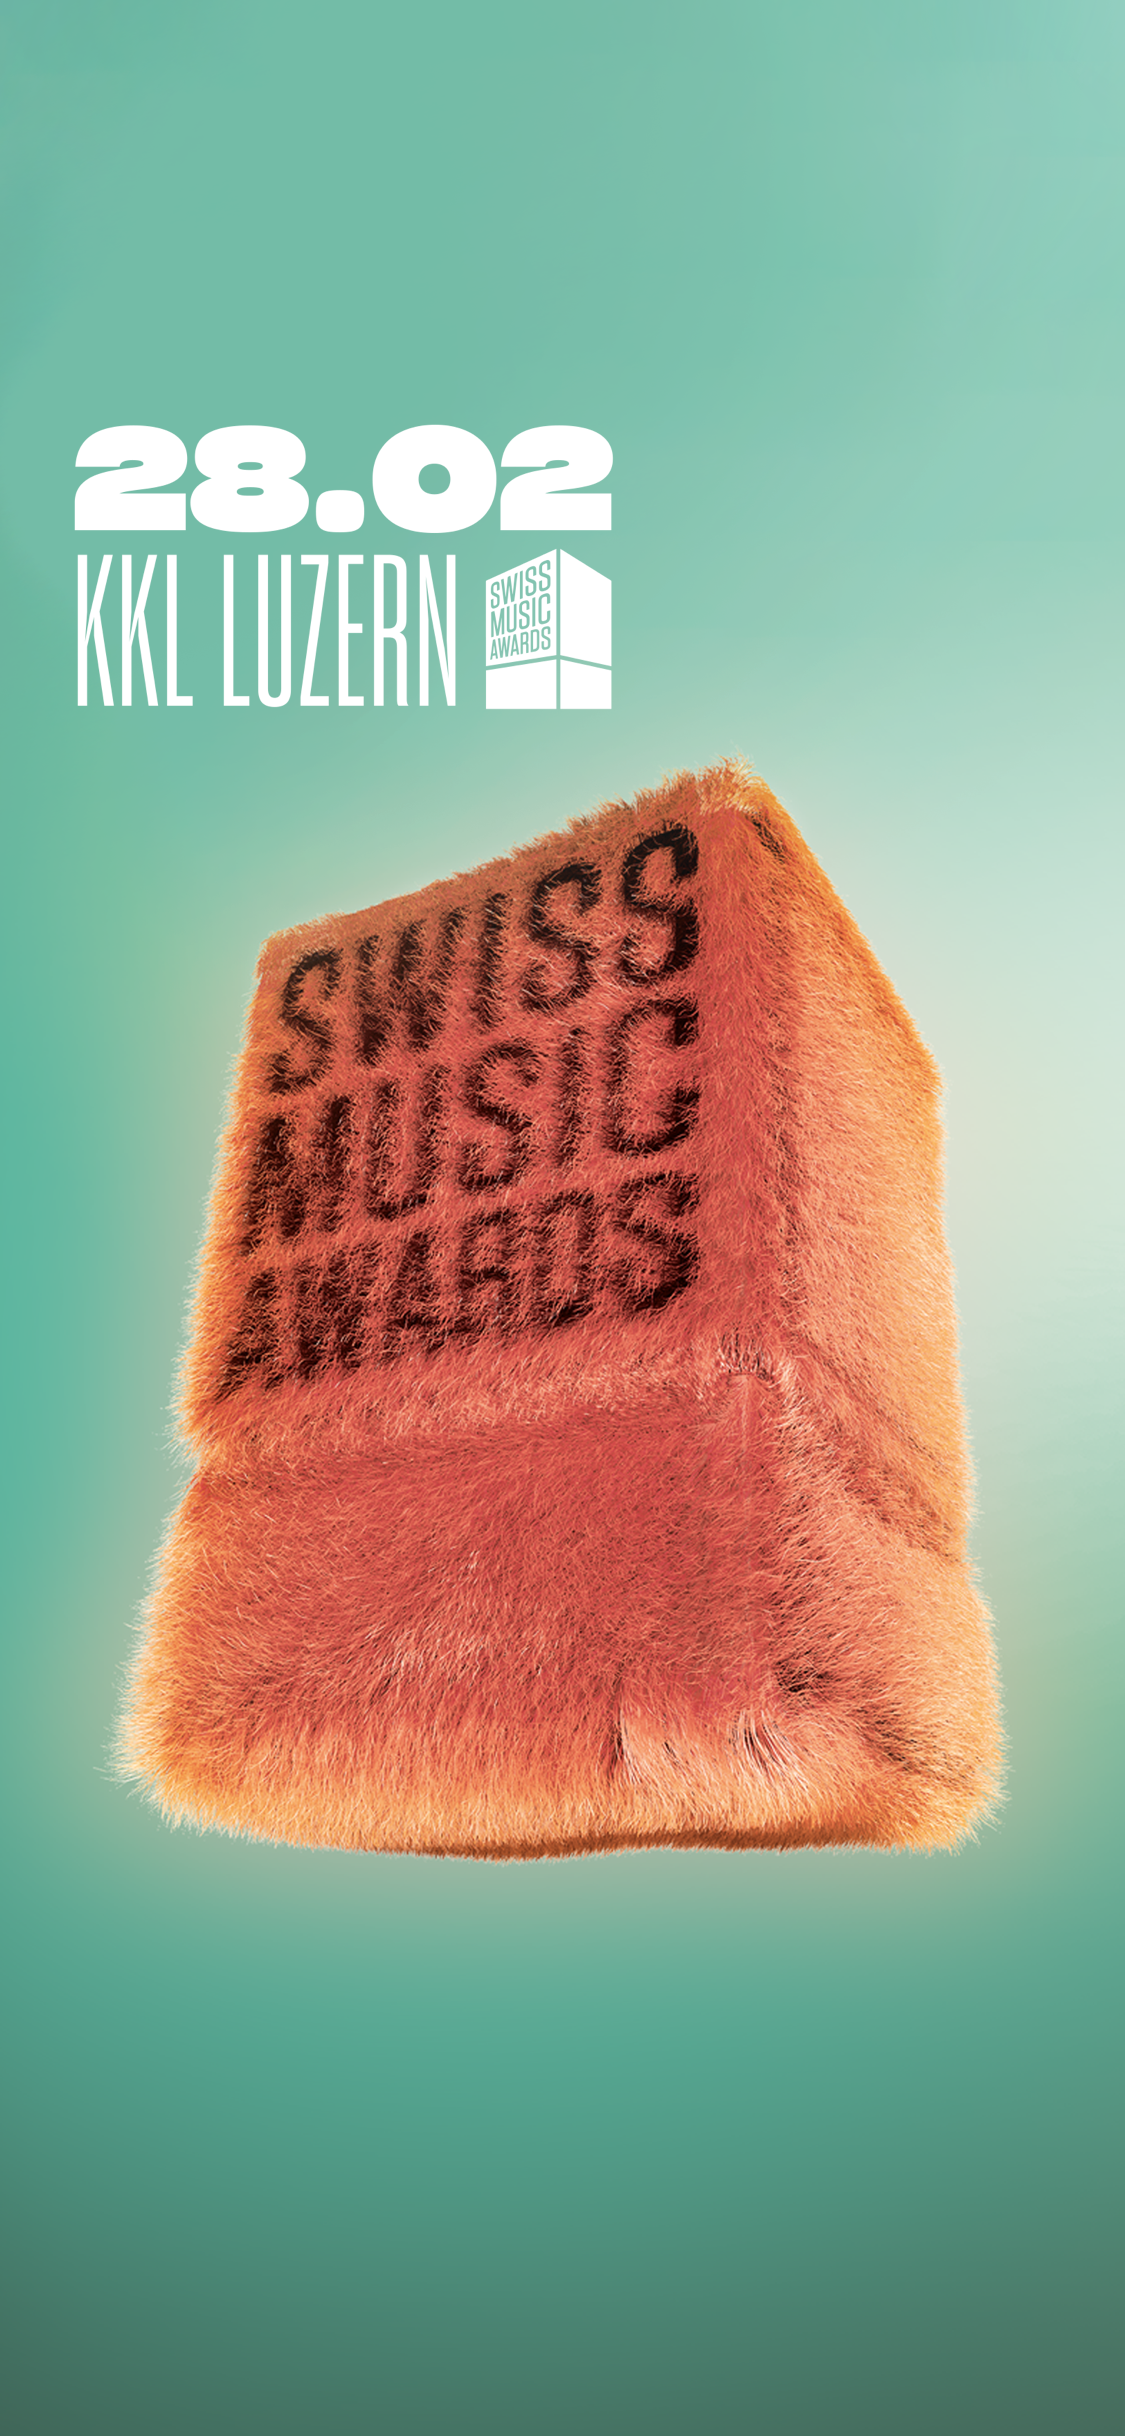 {de}Swiss Music Awards 2020{/de}